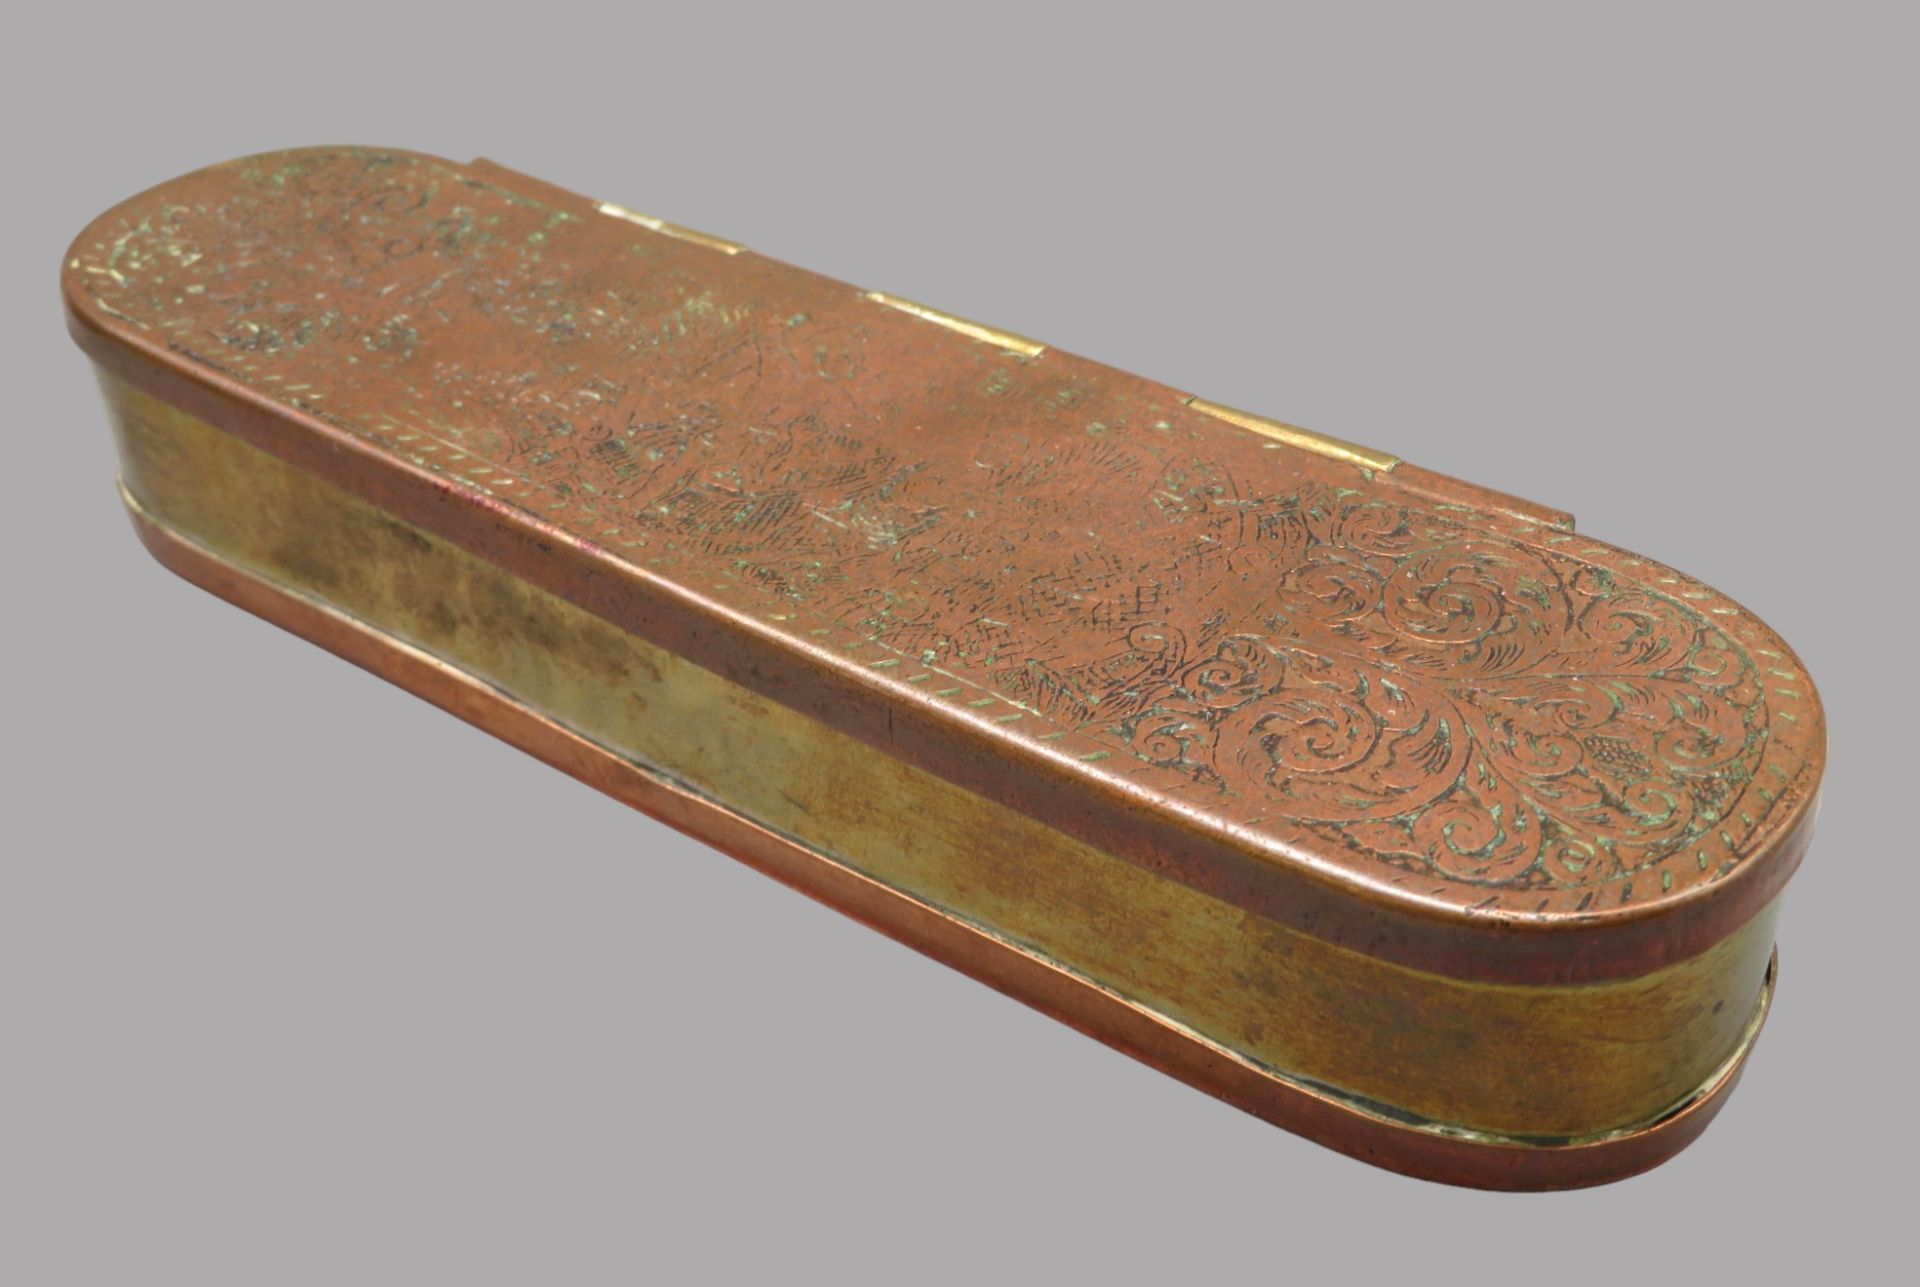 Tabaksdose, 18. Jahrhundert, Kupfer und Messing, reich gravierter Deckel, 3 x 17,5 x 5 cm. - Bild 2 aus 2